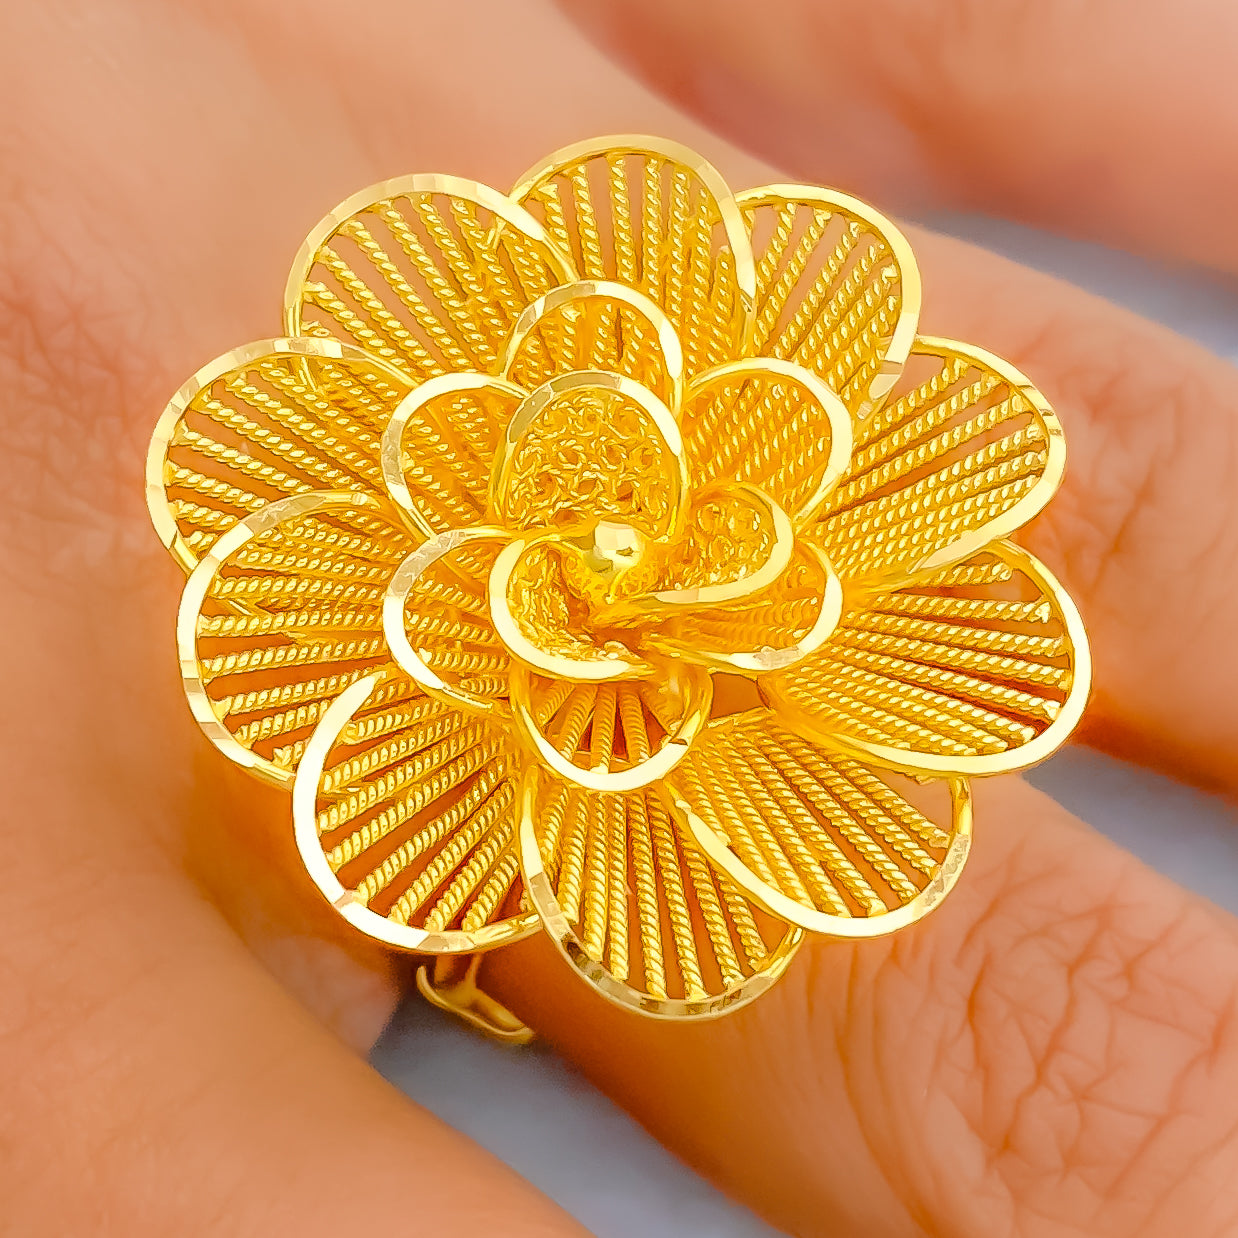 Yellow gold flower ring design on Craiyon